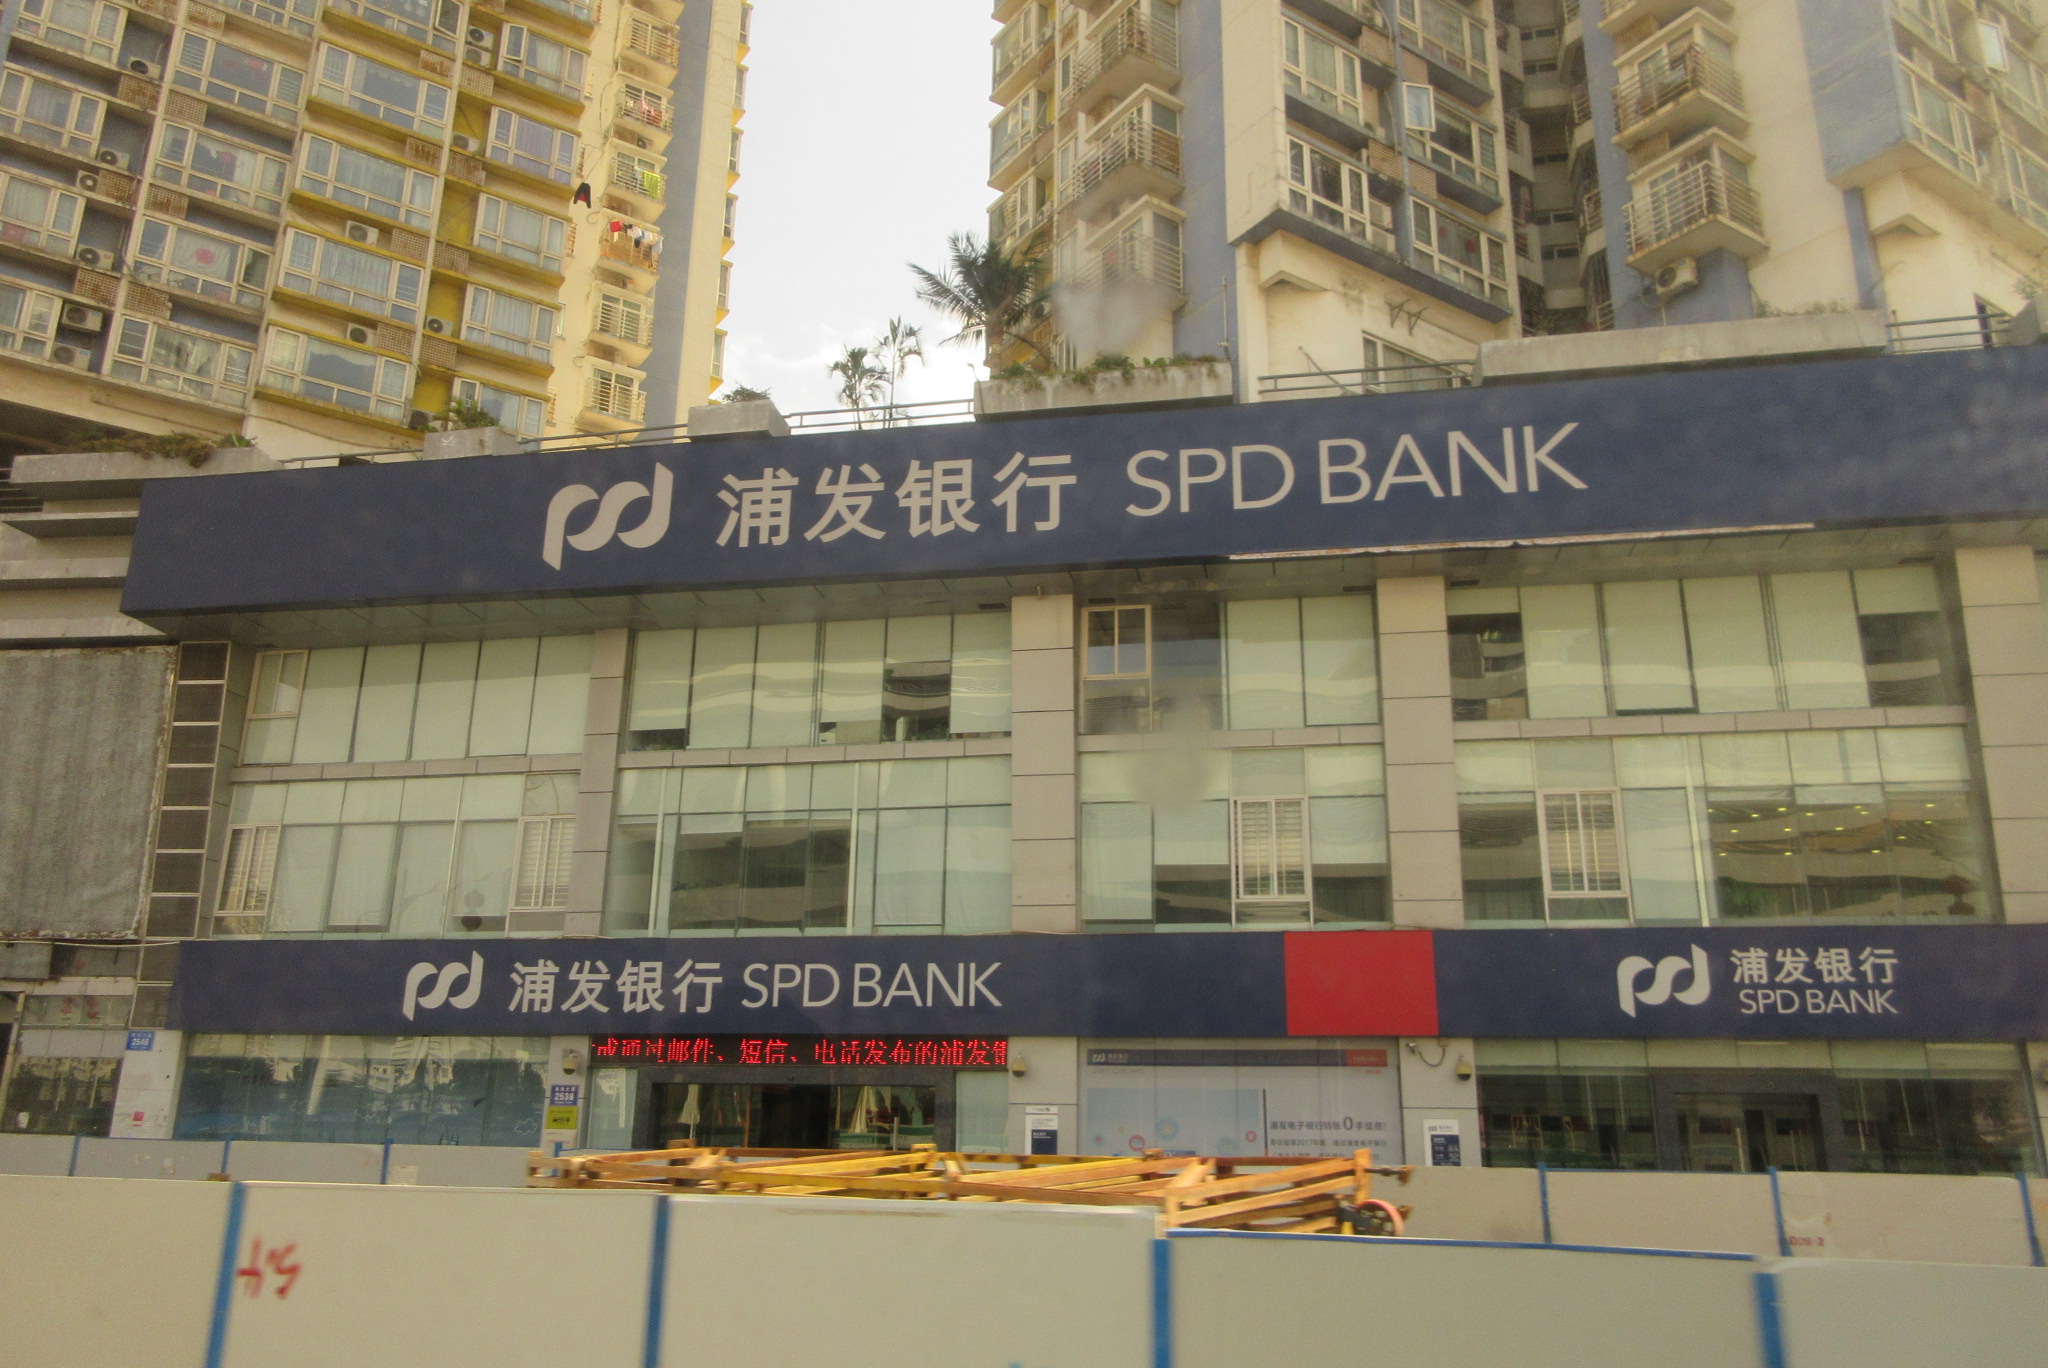 Спд банк. Банк Shanghai Pudong Development Bank. Shanghai Pudong Development Bank логотип. Реквизиты банка Shanghai Pudong Development Bank. SPD Bank.